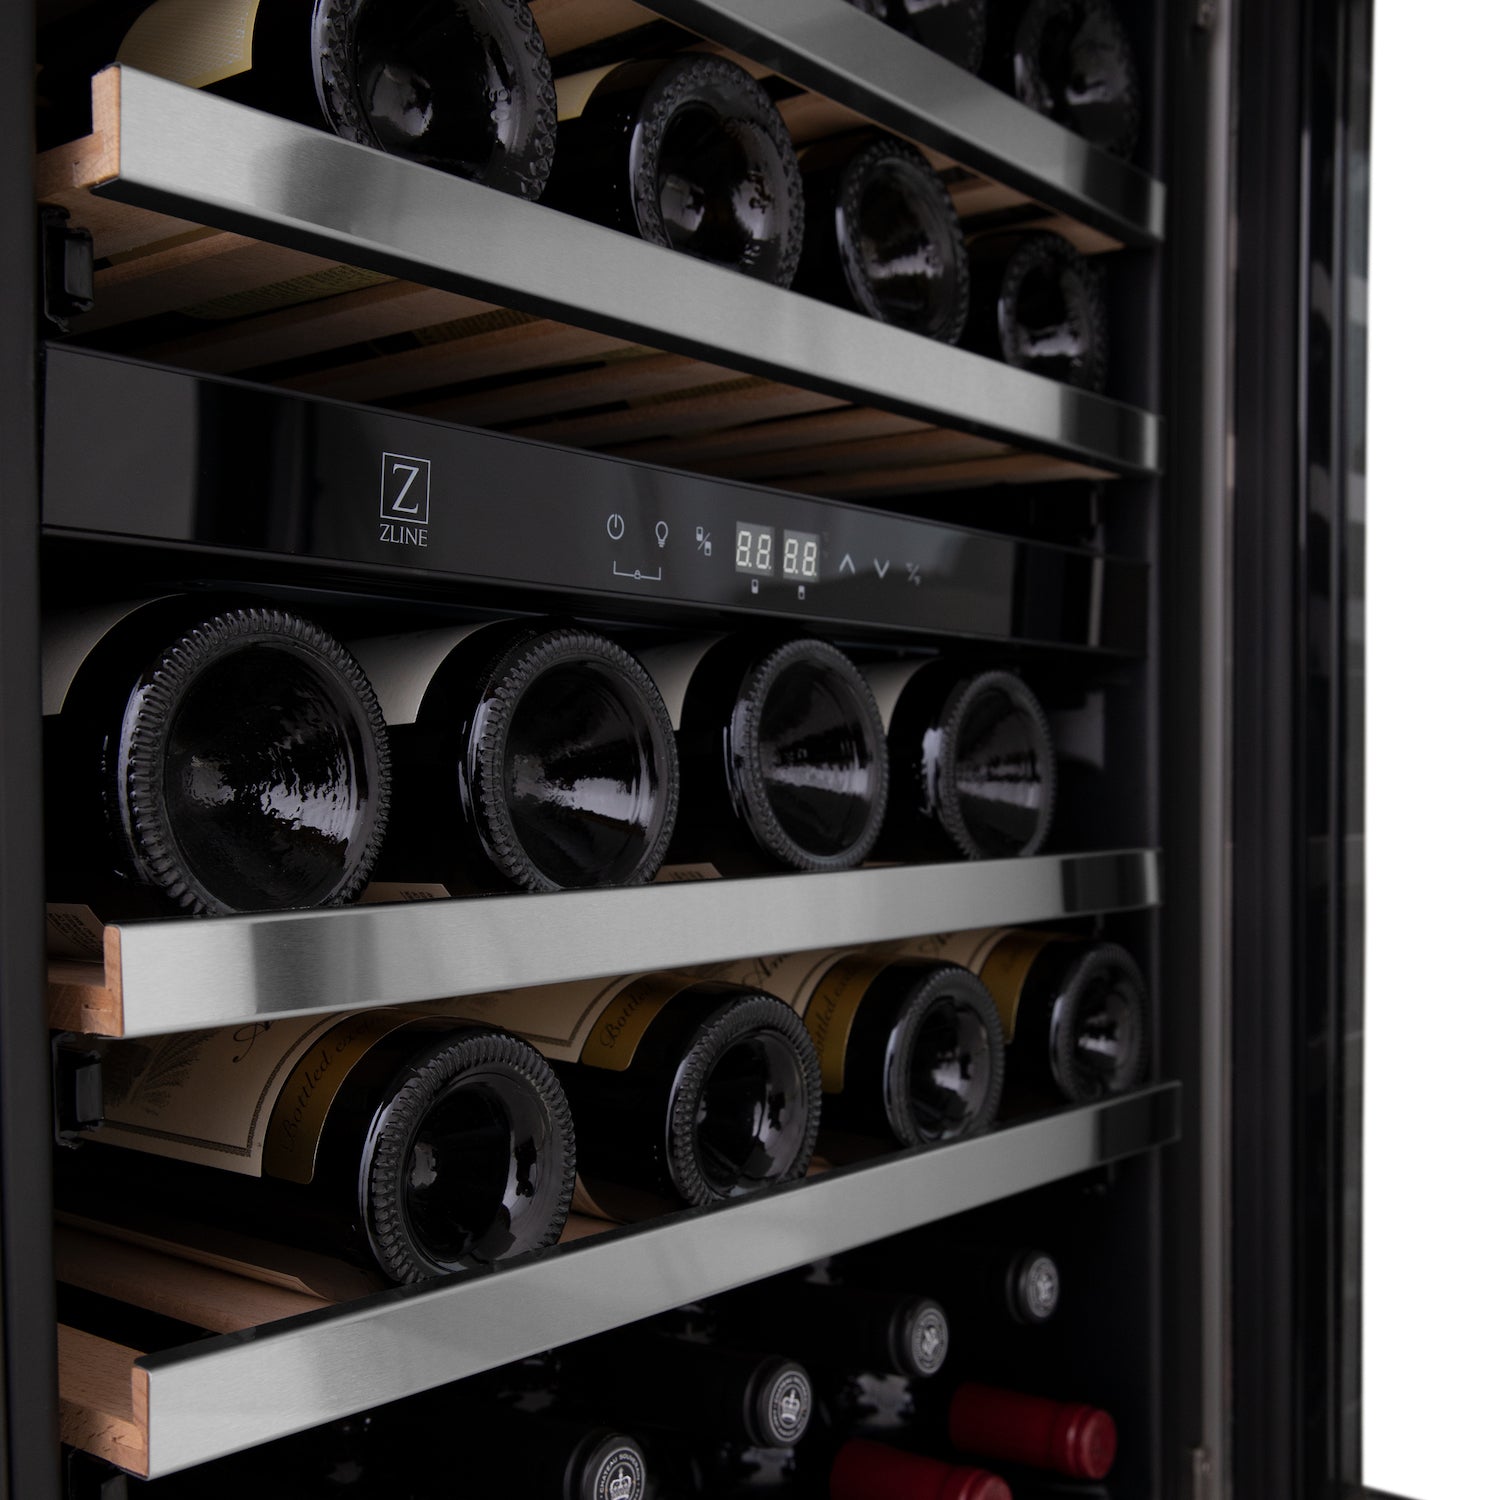 Wine bottles stored inside ZLINE 24" Monument Dual Zone Wine Cooler on adjustable wood shelves.